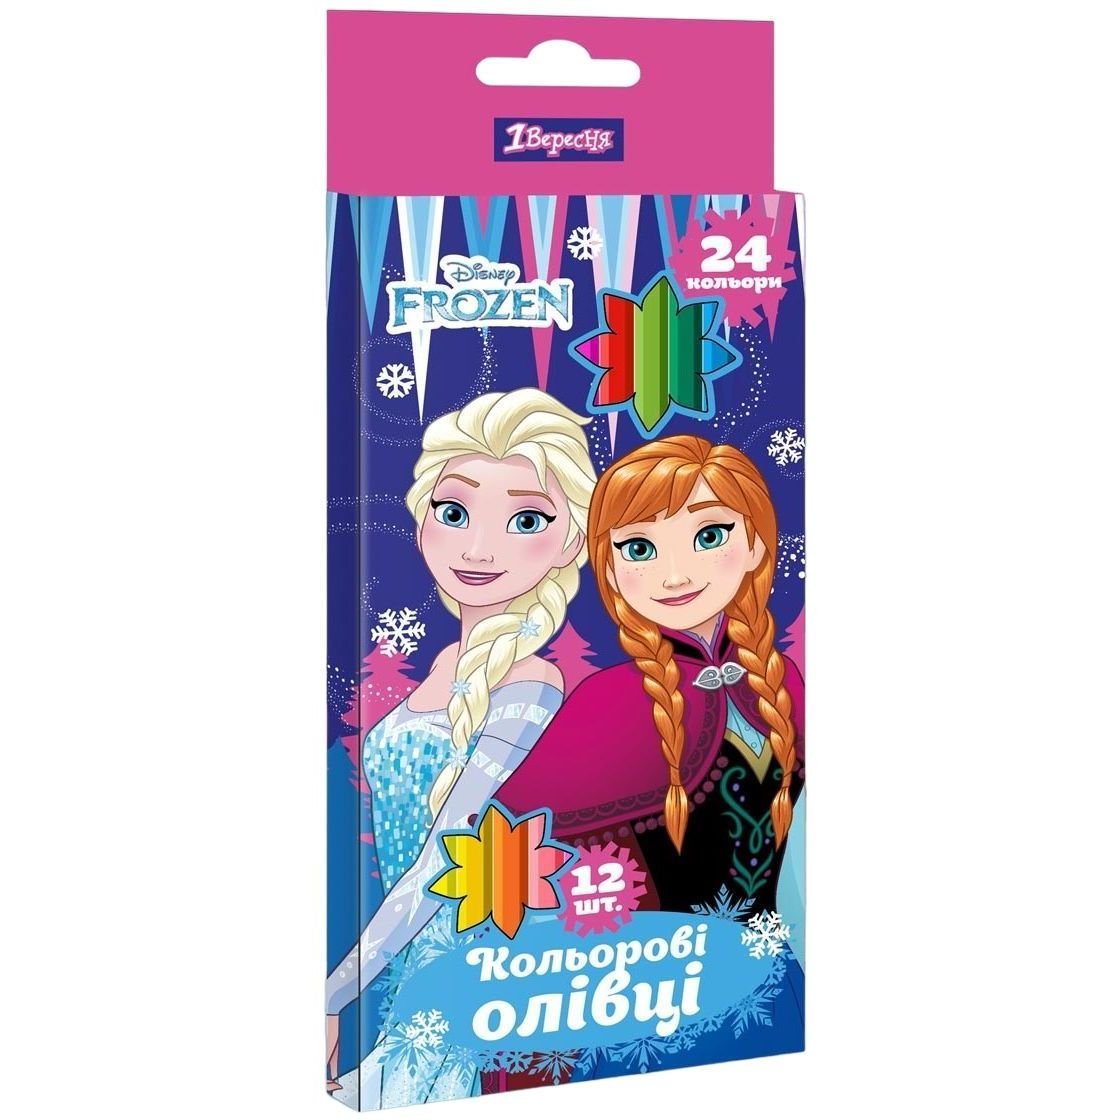 Карандаши цветные 1 Вересня Frozen, двусторонние, 12 шт., 24 цвета (290619) - фото 1